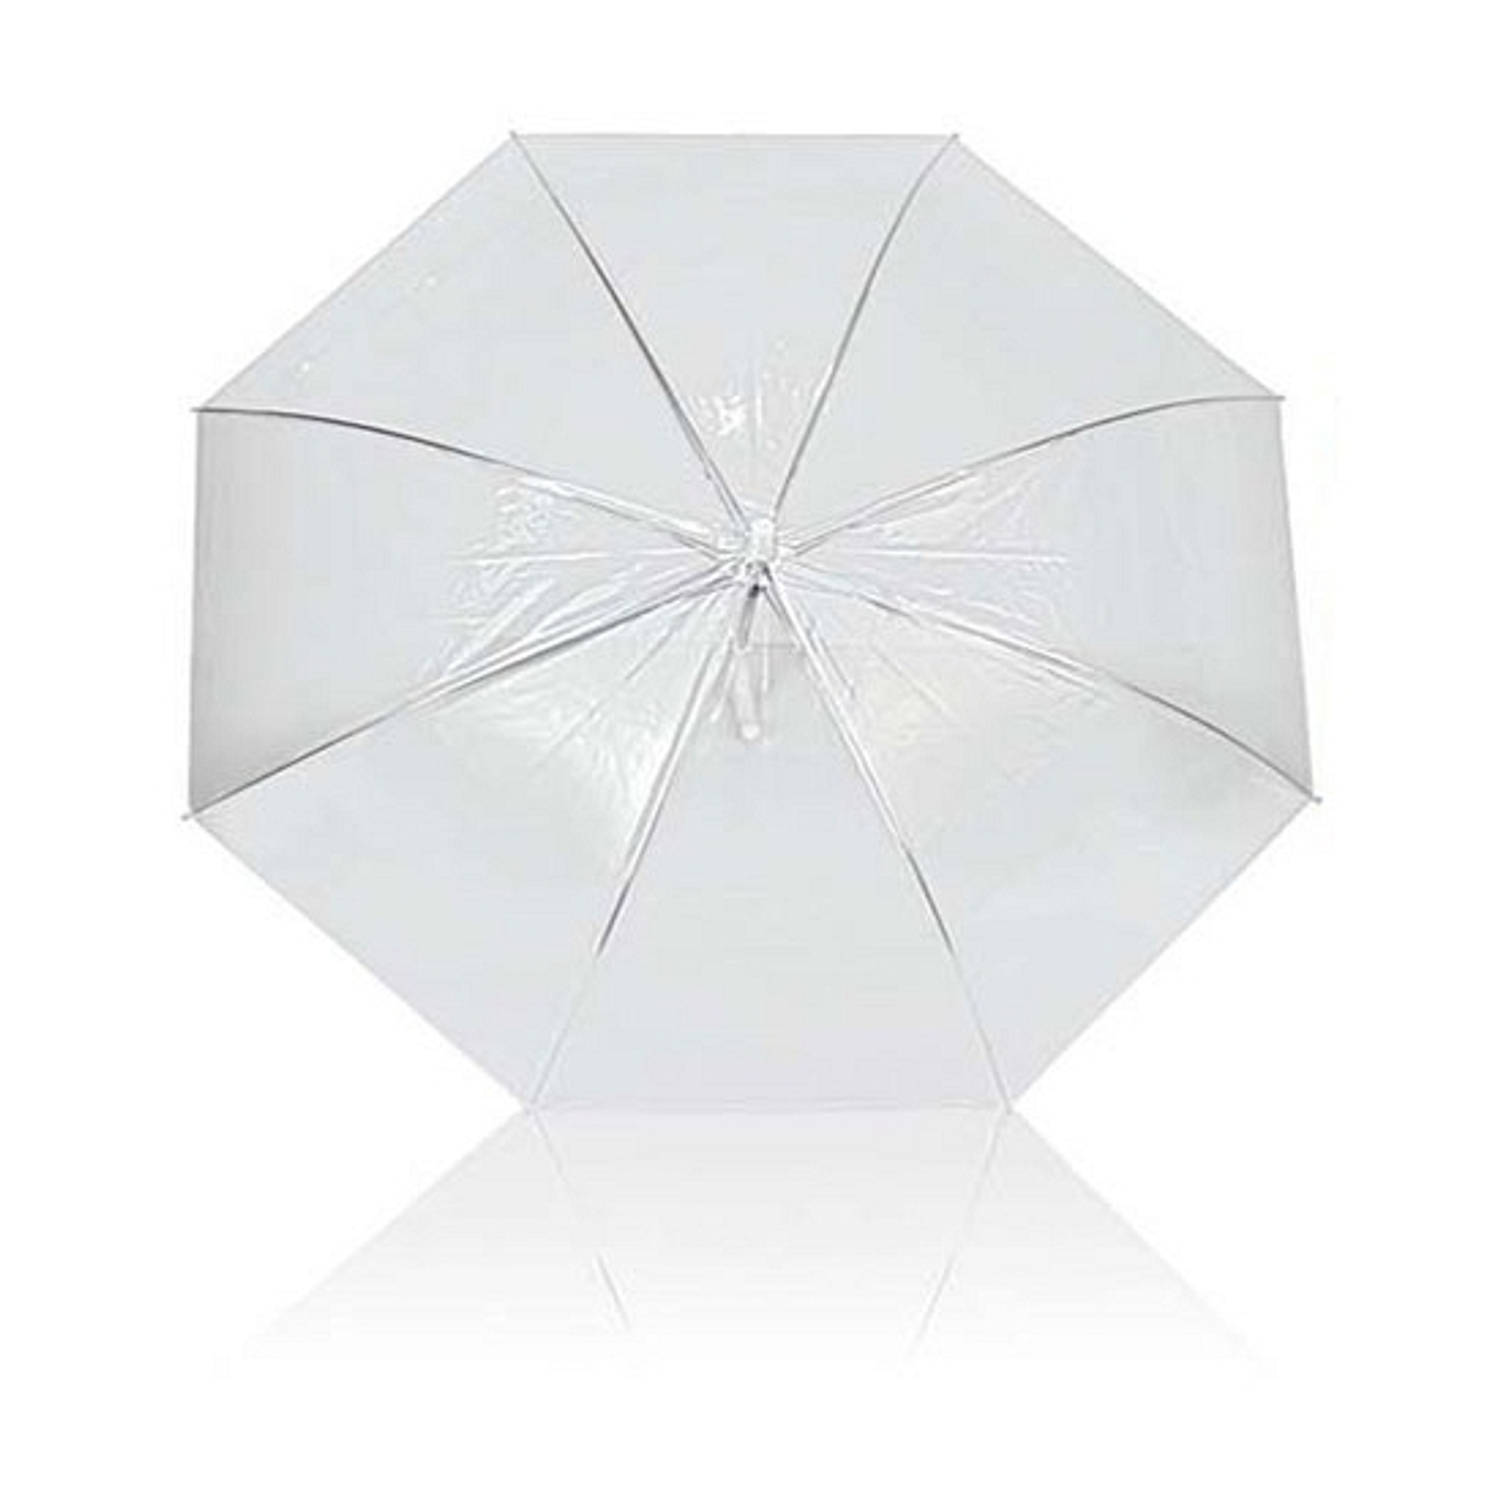 Onderdrukker opslag Lief Transparant plastic paraplu 92 cm | Blokker